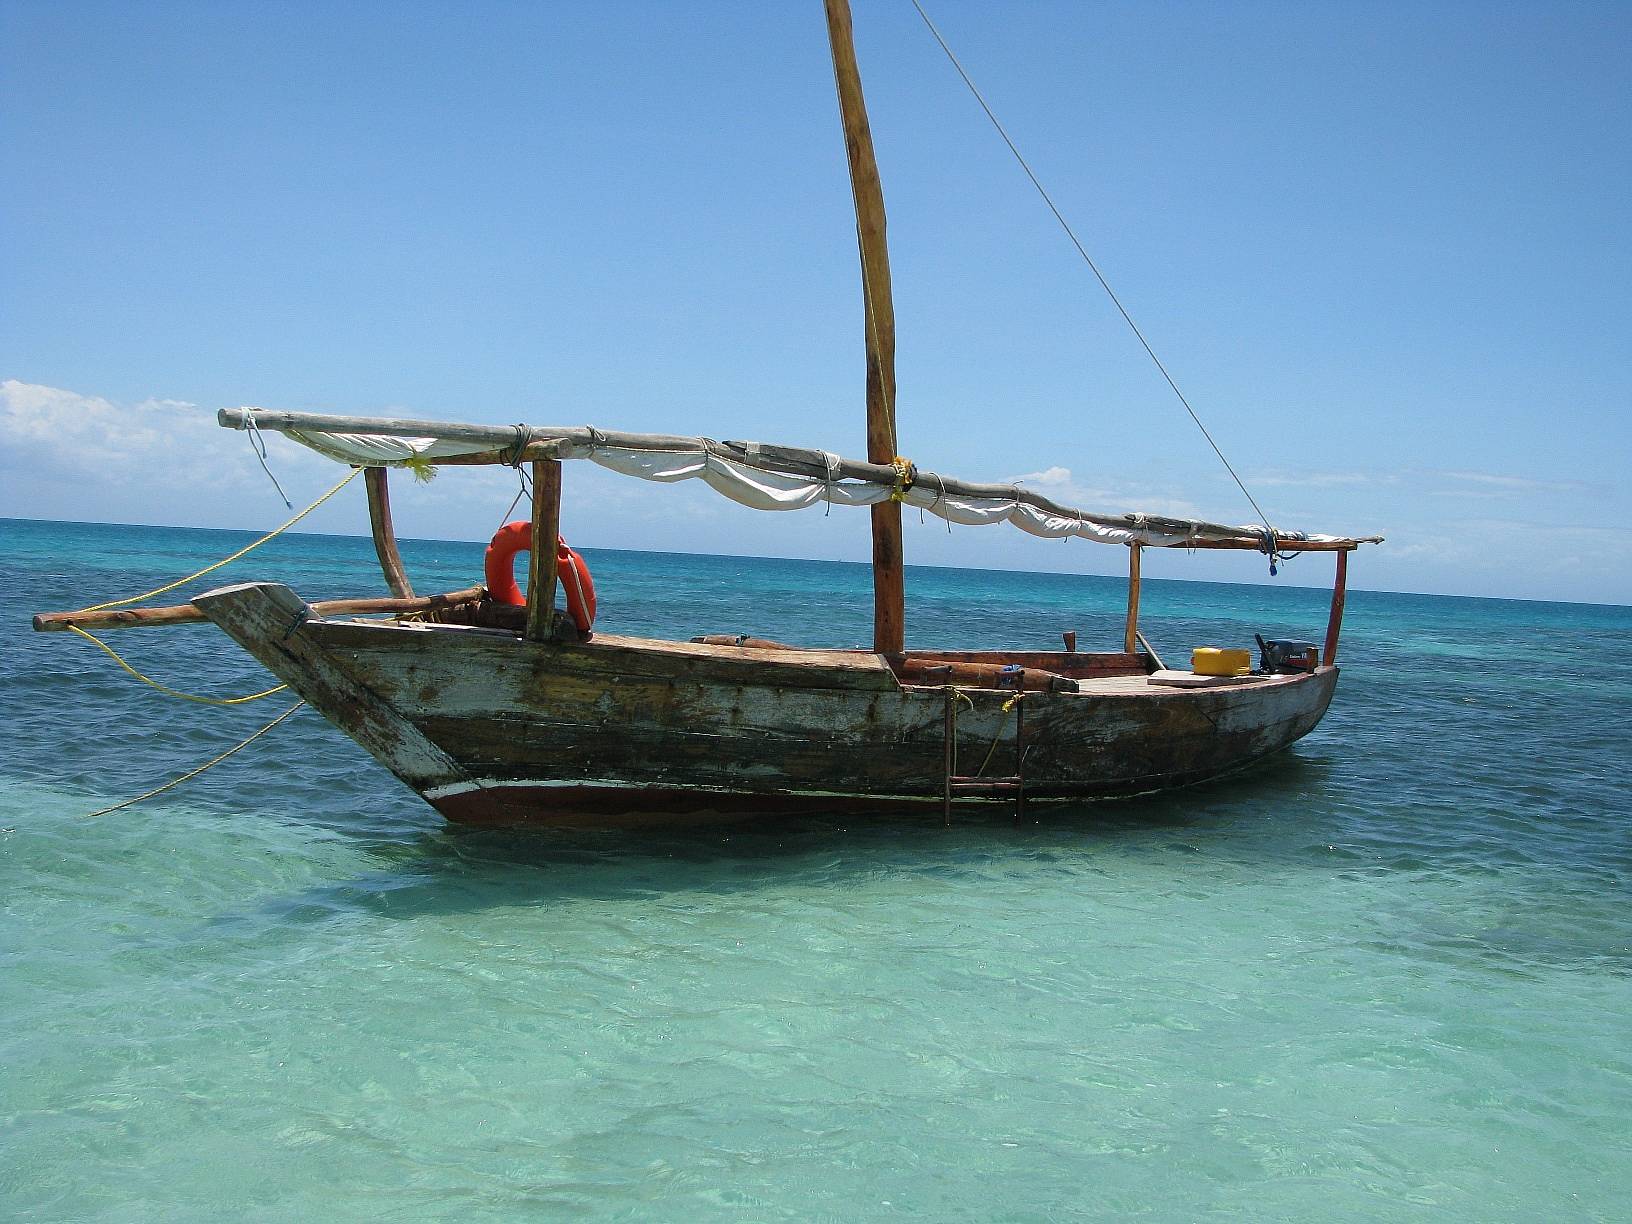 Erholung und Ausflugsmöglichkeiten auf Sansibar